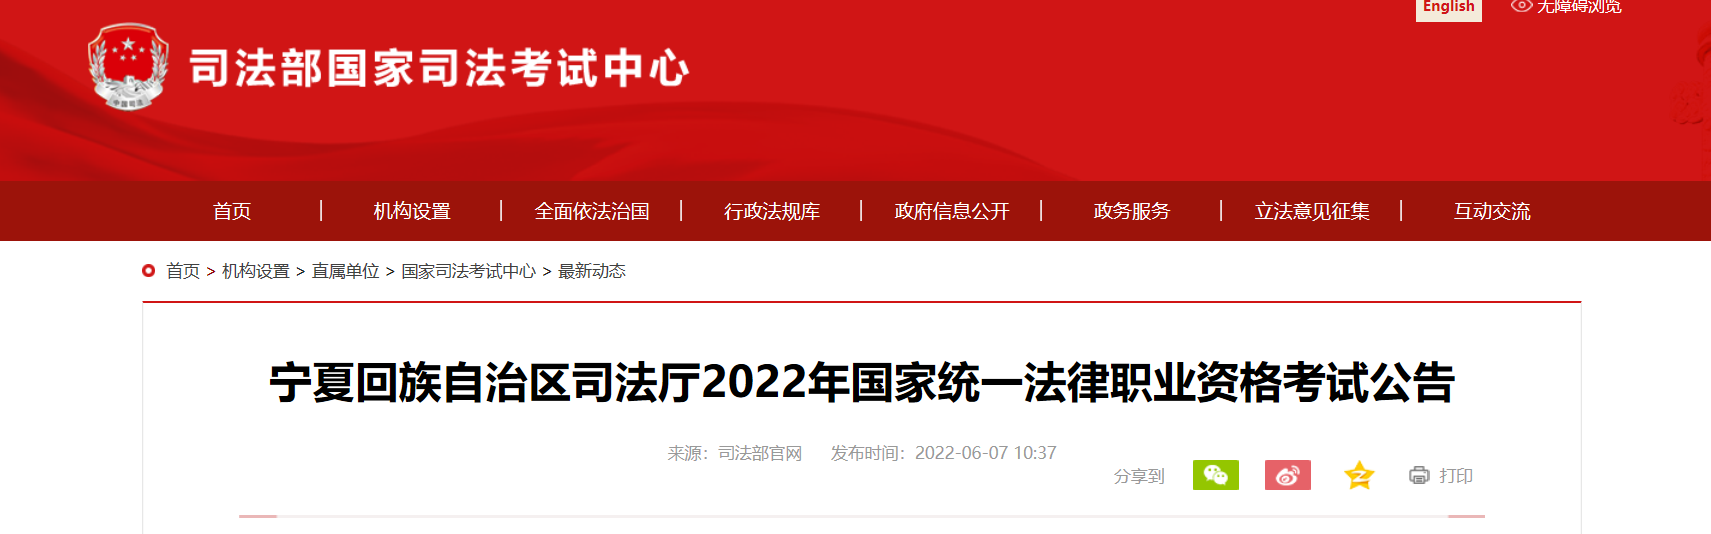 2022年宁夏国家统一法律职业资格考试资格审核及相关公告